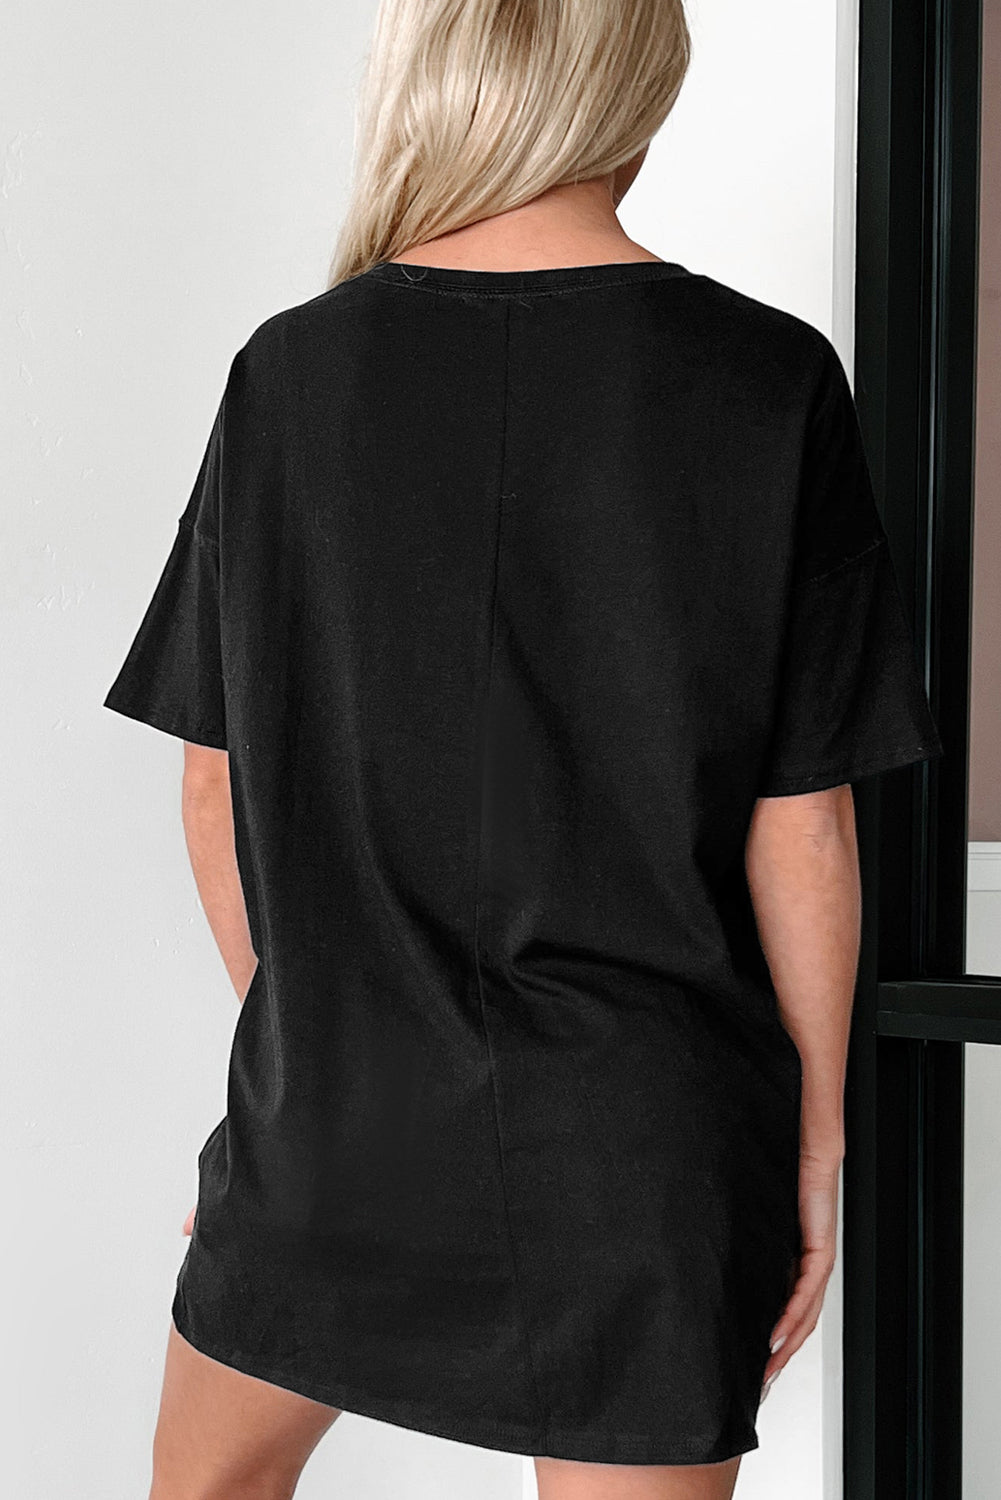 Schwarzes einfarbiges Basic-Tunika-T-Shirt mit Rundhalsausschnitt